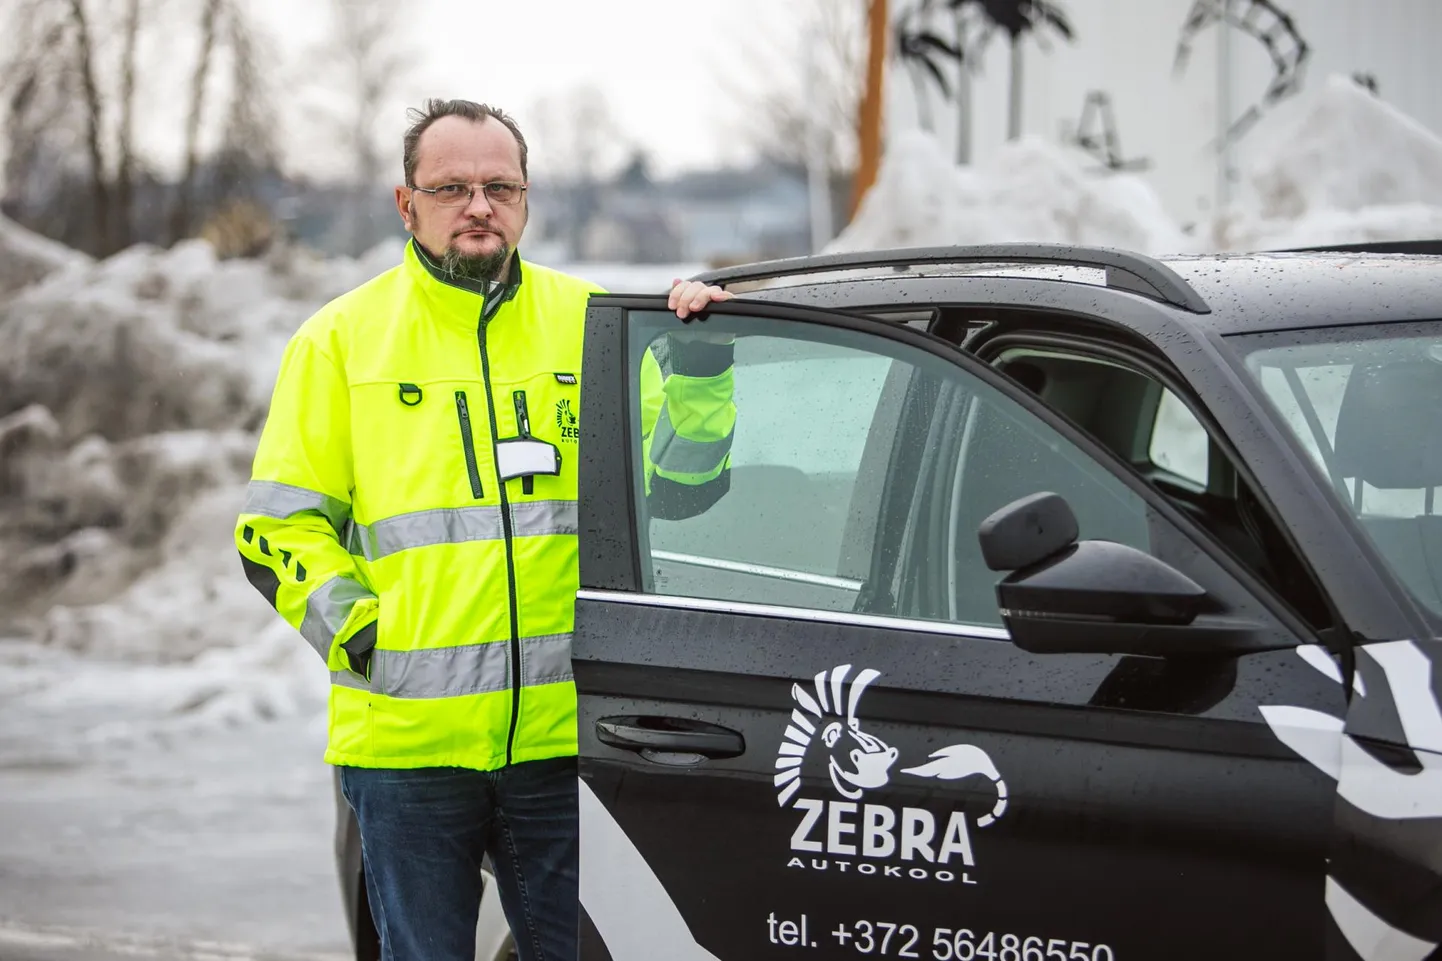 Zebra autokooli sõiduõpetaja Jaan Hallikas loodab, et lähiajal paraneb transpordiameti ja autokoolide koostöö.